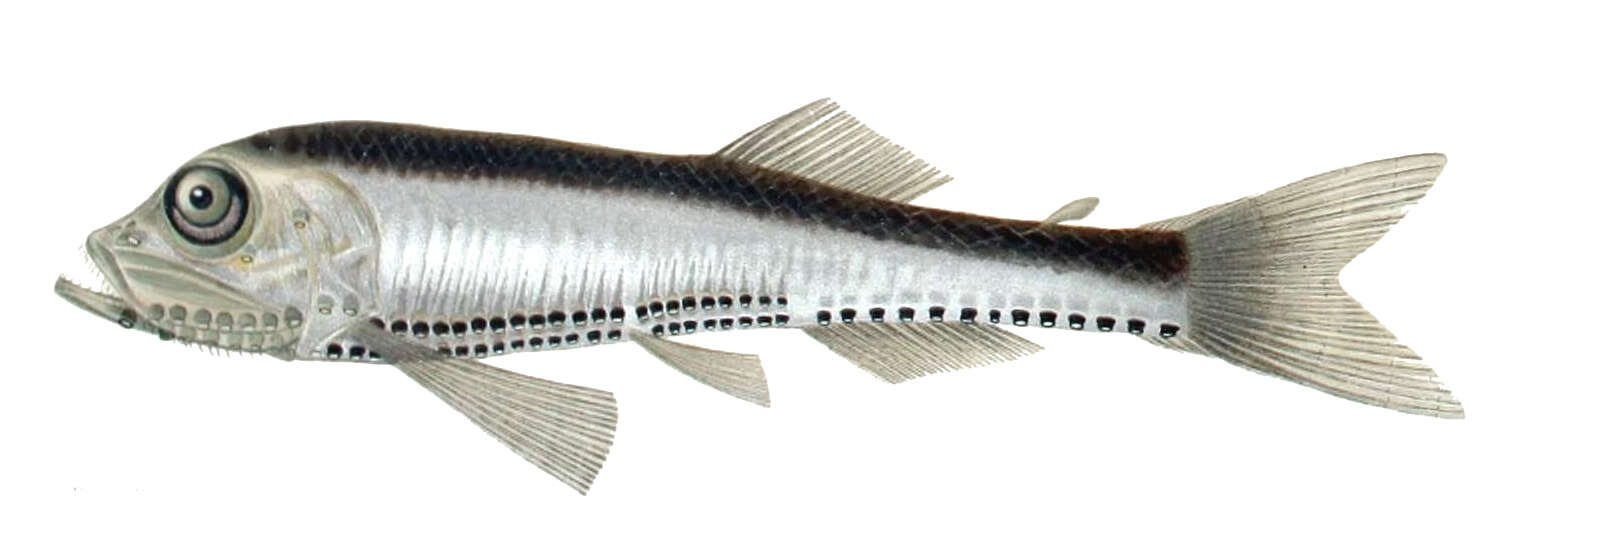 Image of Lightfish